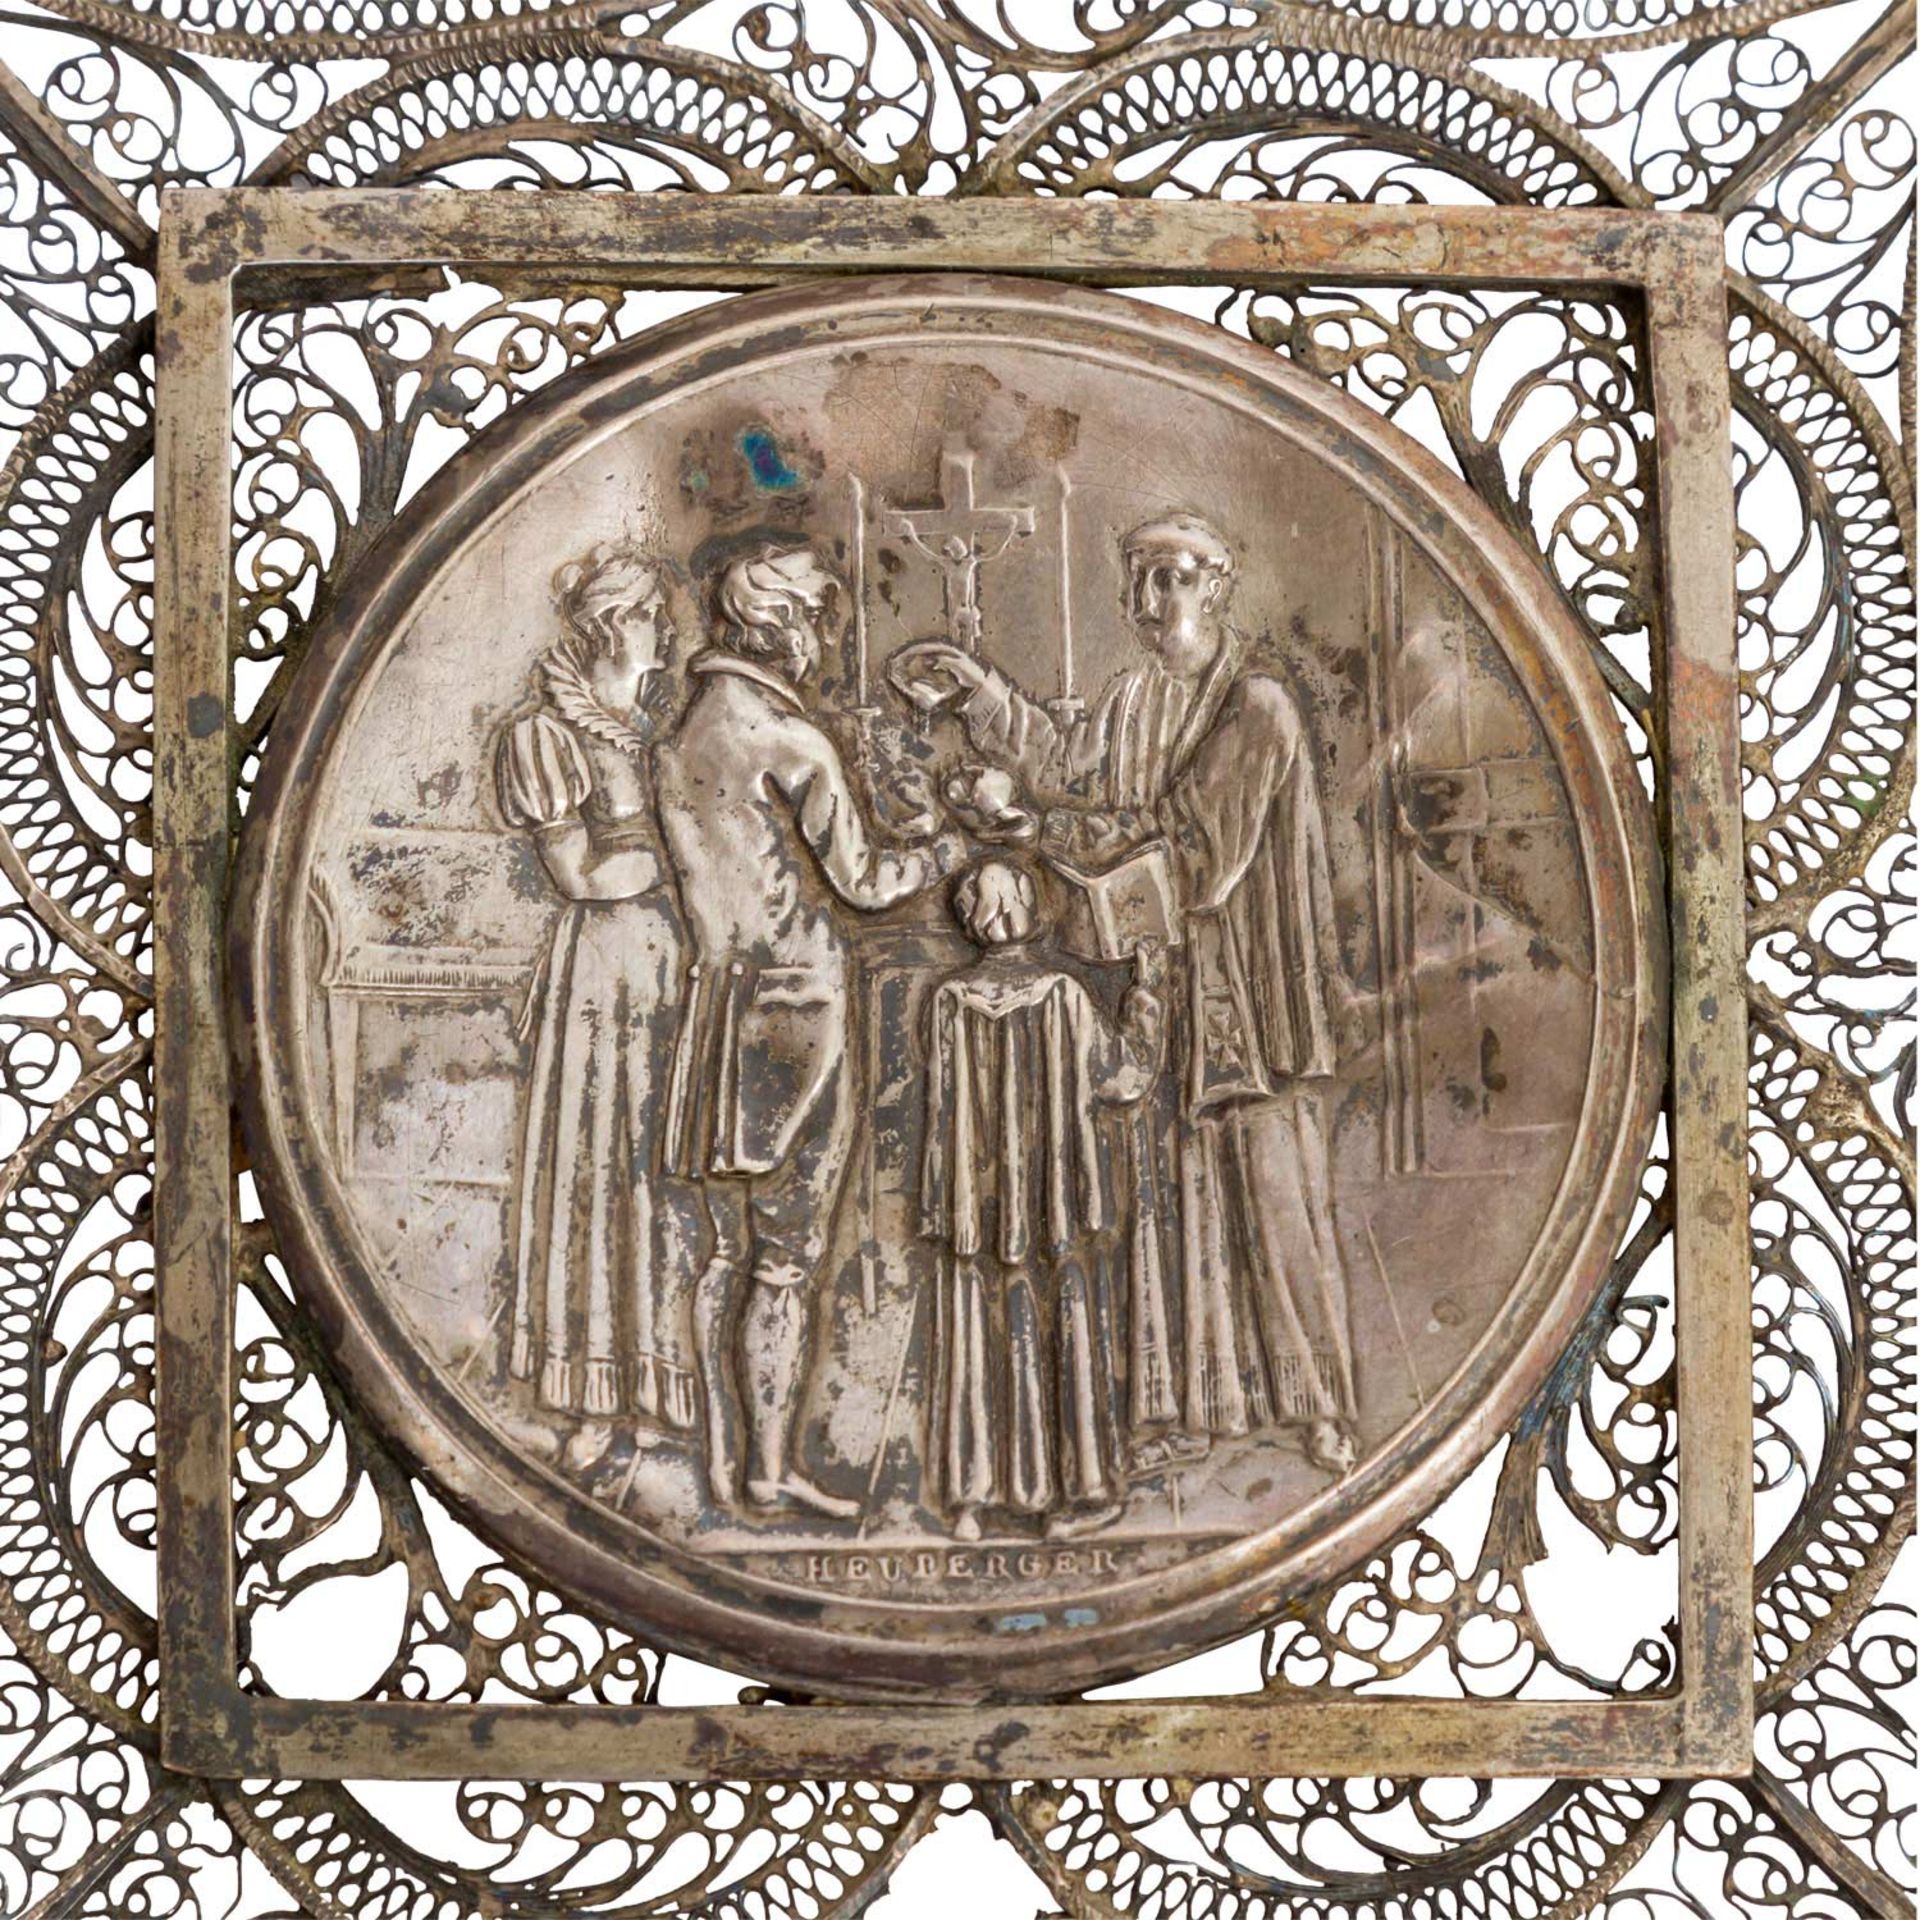 Einseitige Hochzeitsmedaille von Heuberger in 13lötigem Silber (Stempel revers), eing - Bild 2 aus 3